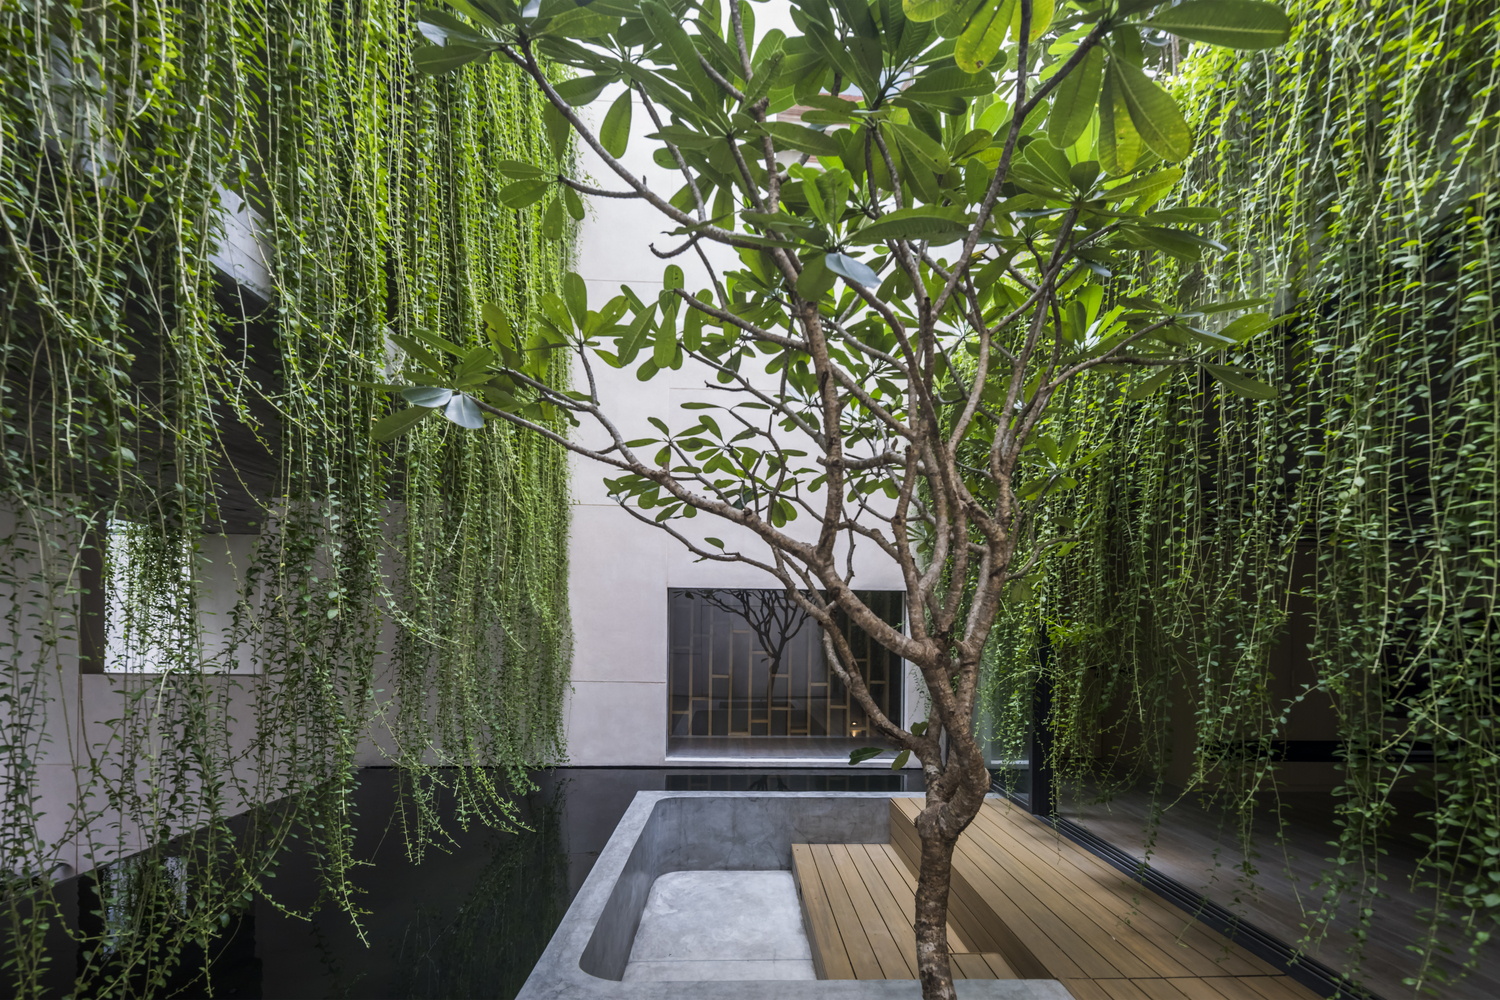 Villa Tân Định: 'Mảnh vườn thơ' xanh mướt giữa trung tâm Sài Gòn tấp nập - Ảnh 7